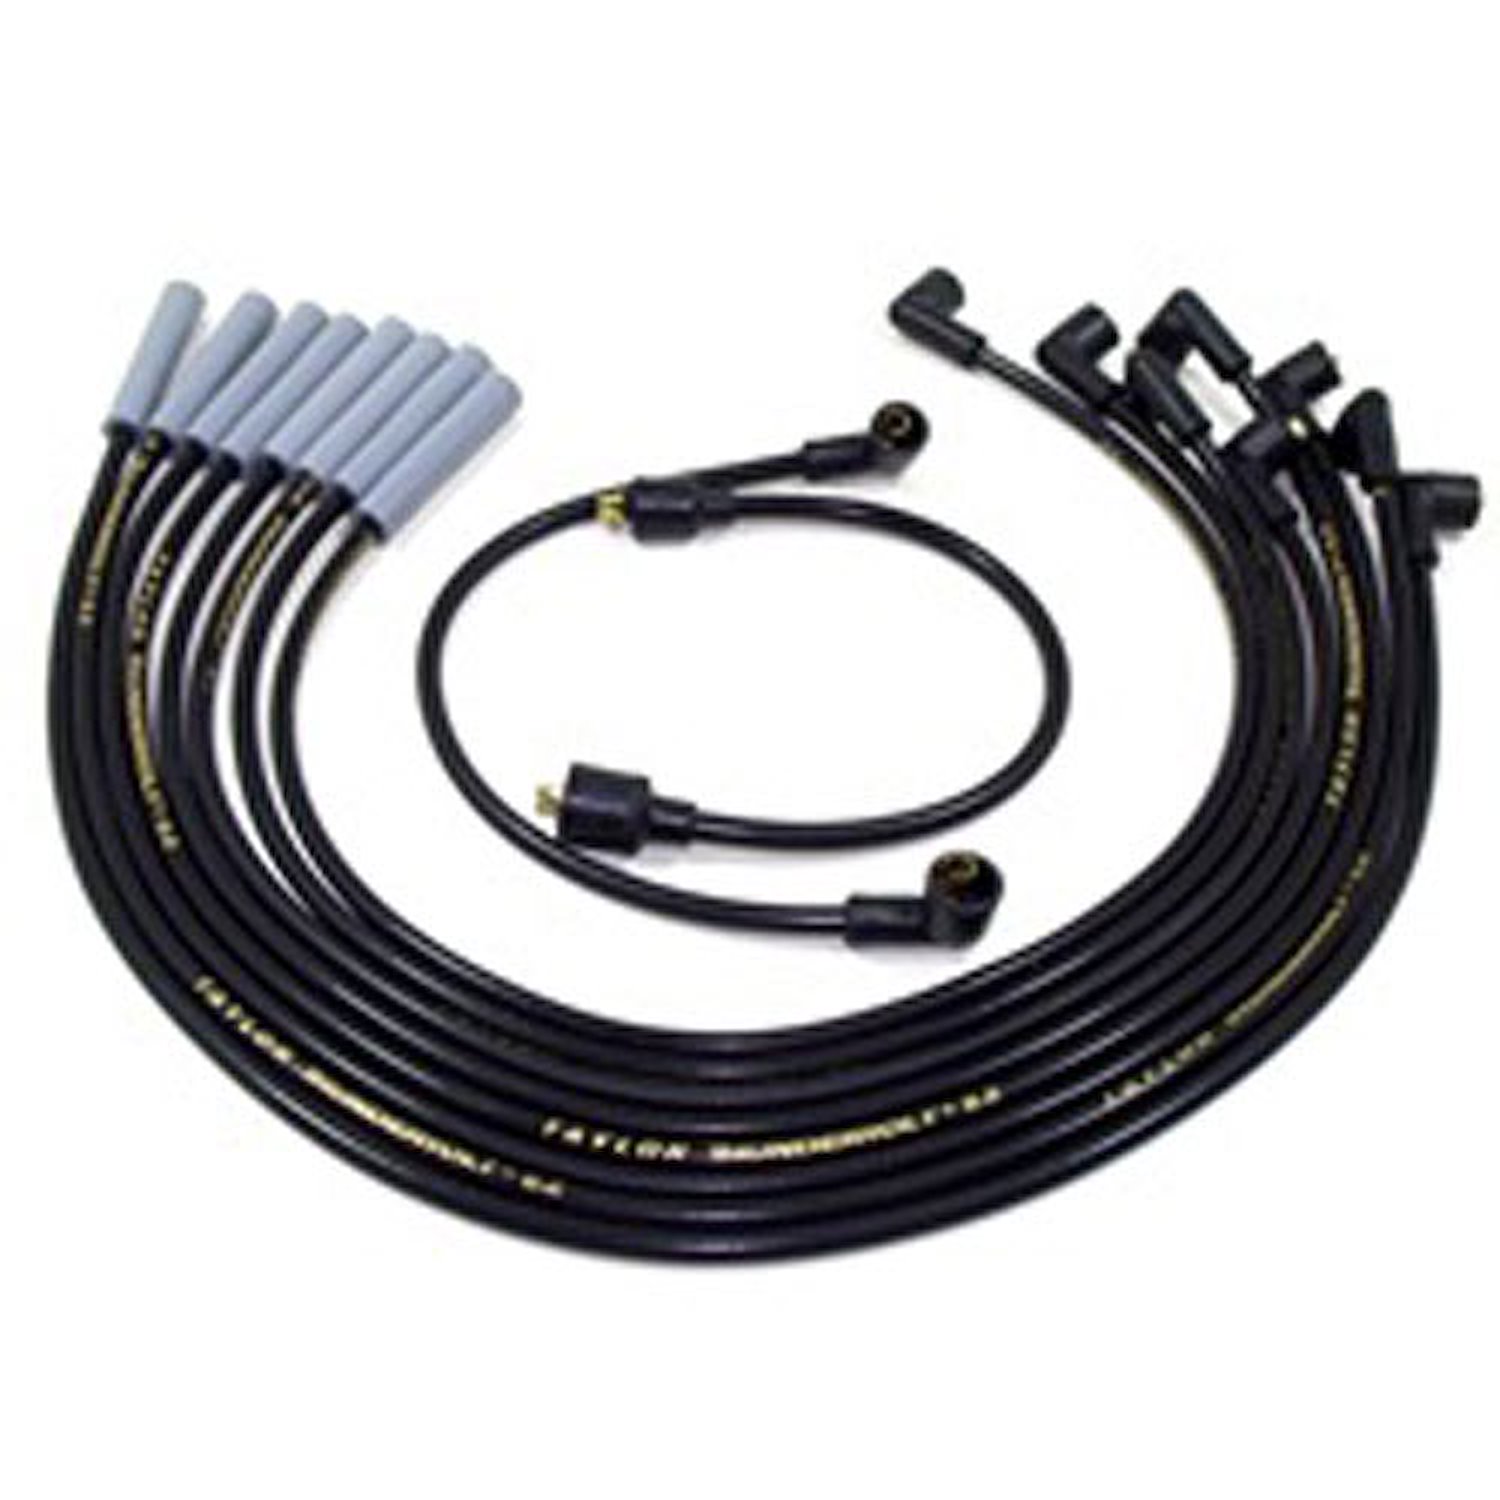 ThunderVolt 8.2mm Spark Plug Wires American Motors, Ford/Mercury, GM 8-Cylinder Black